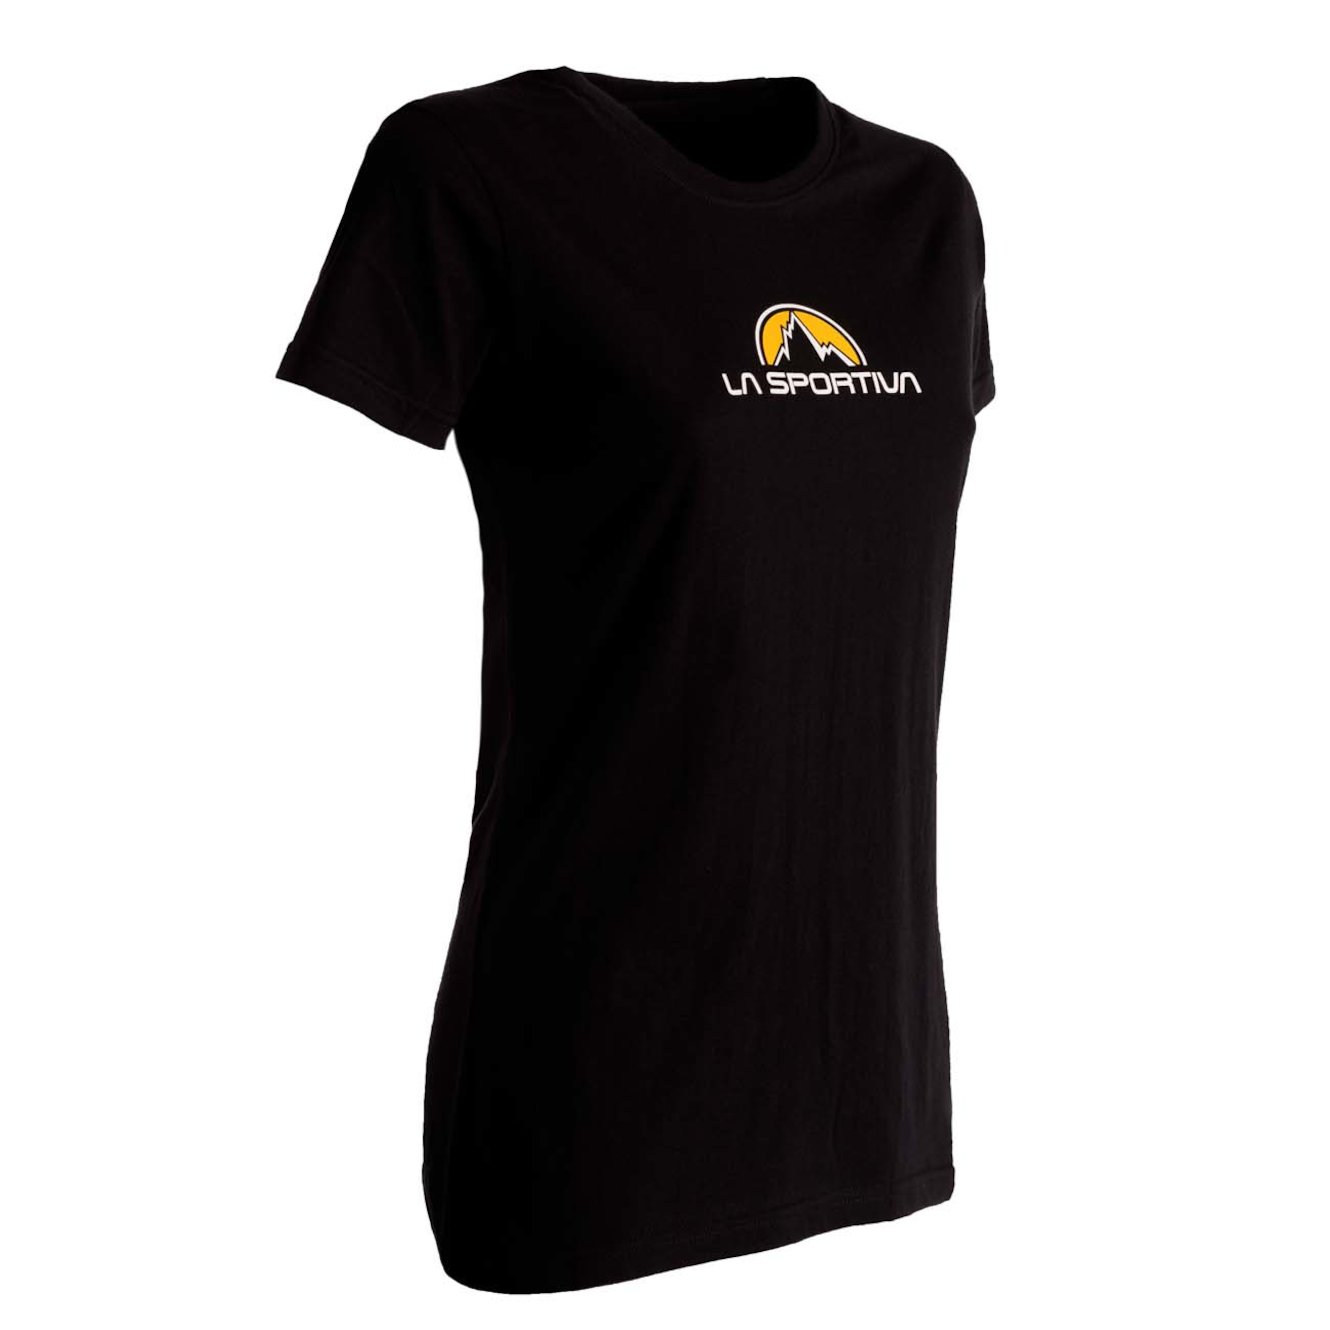 La Sportiva Unisex Footstep Tee T-Shirt